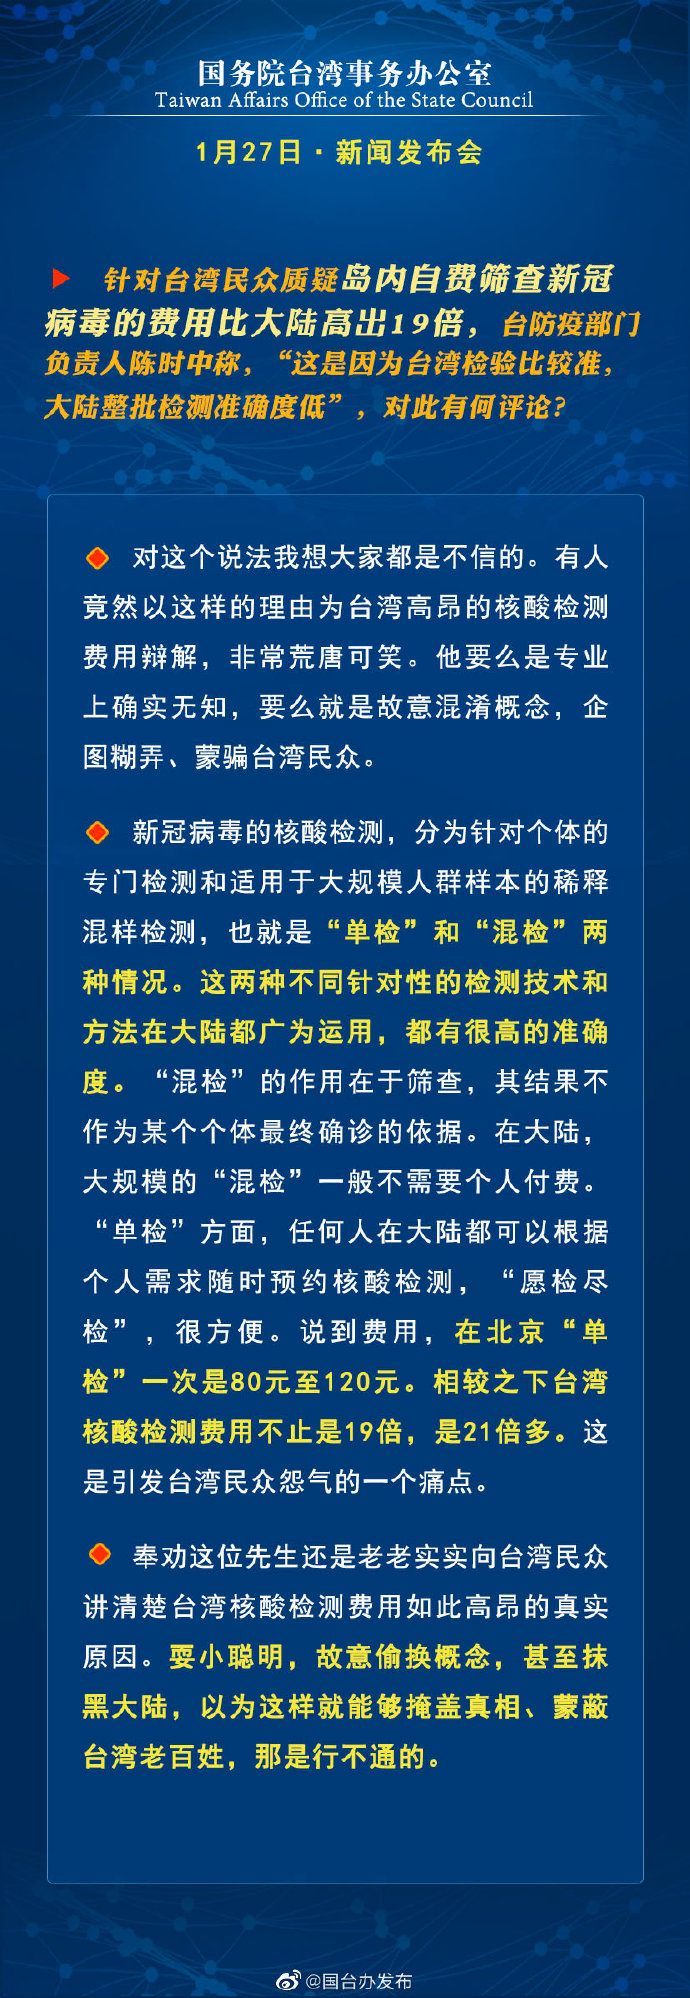 国务院台湾事务办公室1月13日·新闻发布会_fororder_a4